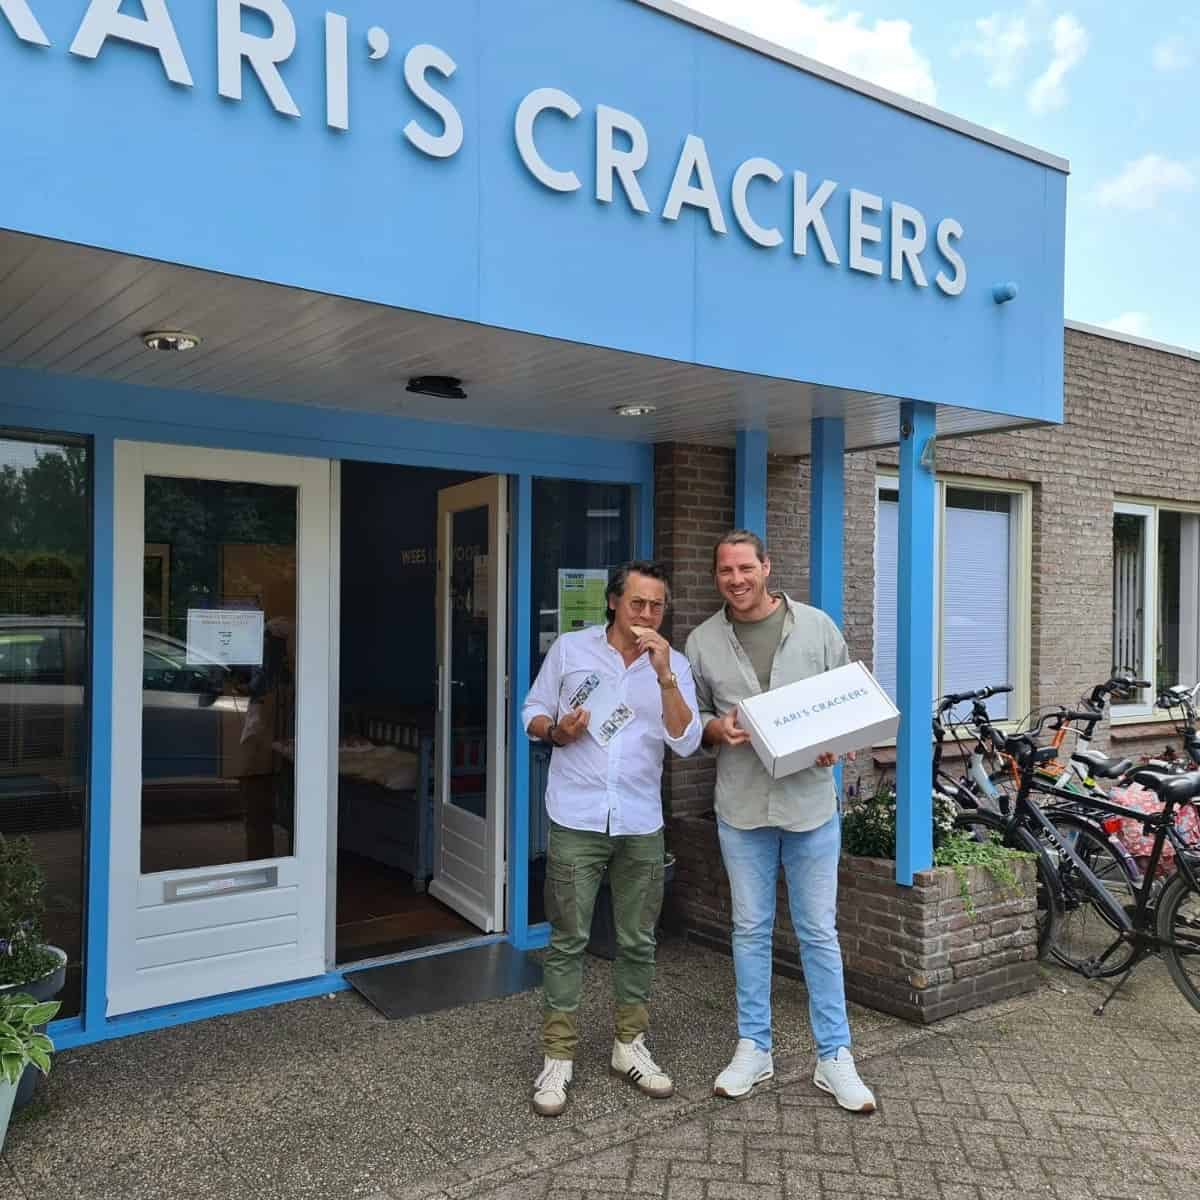 Kari's Crackers
De Weerd 4
8141 BT Heino